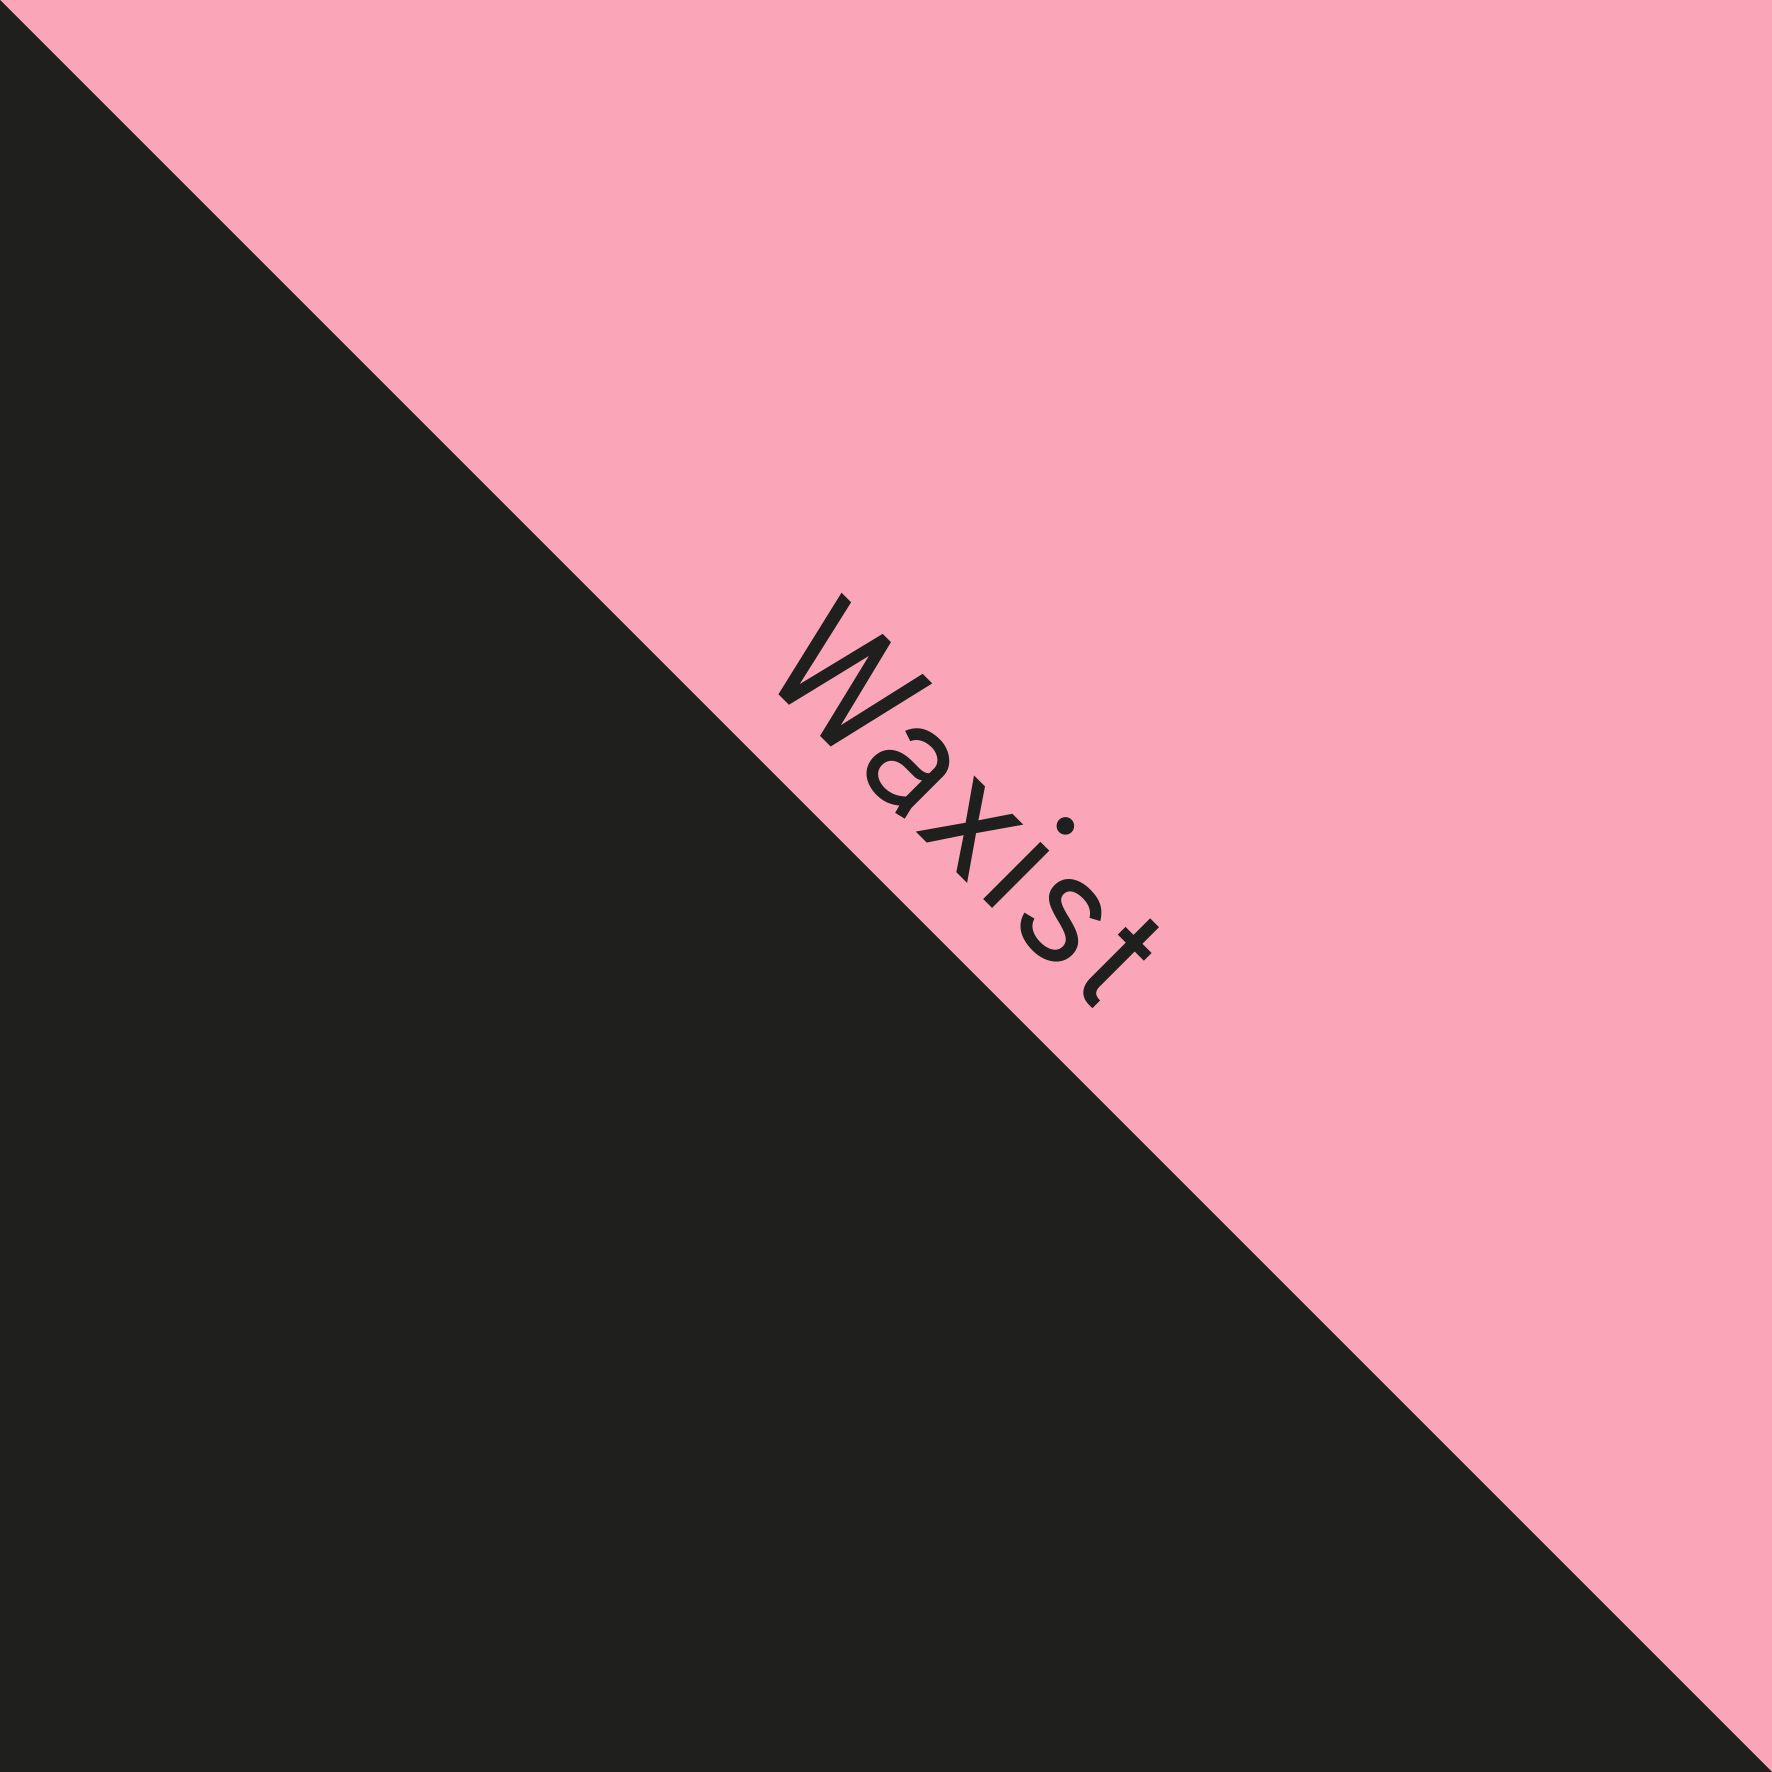 Waxist_nc.gif